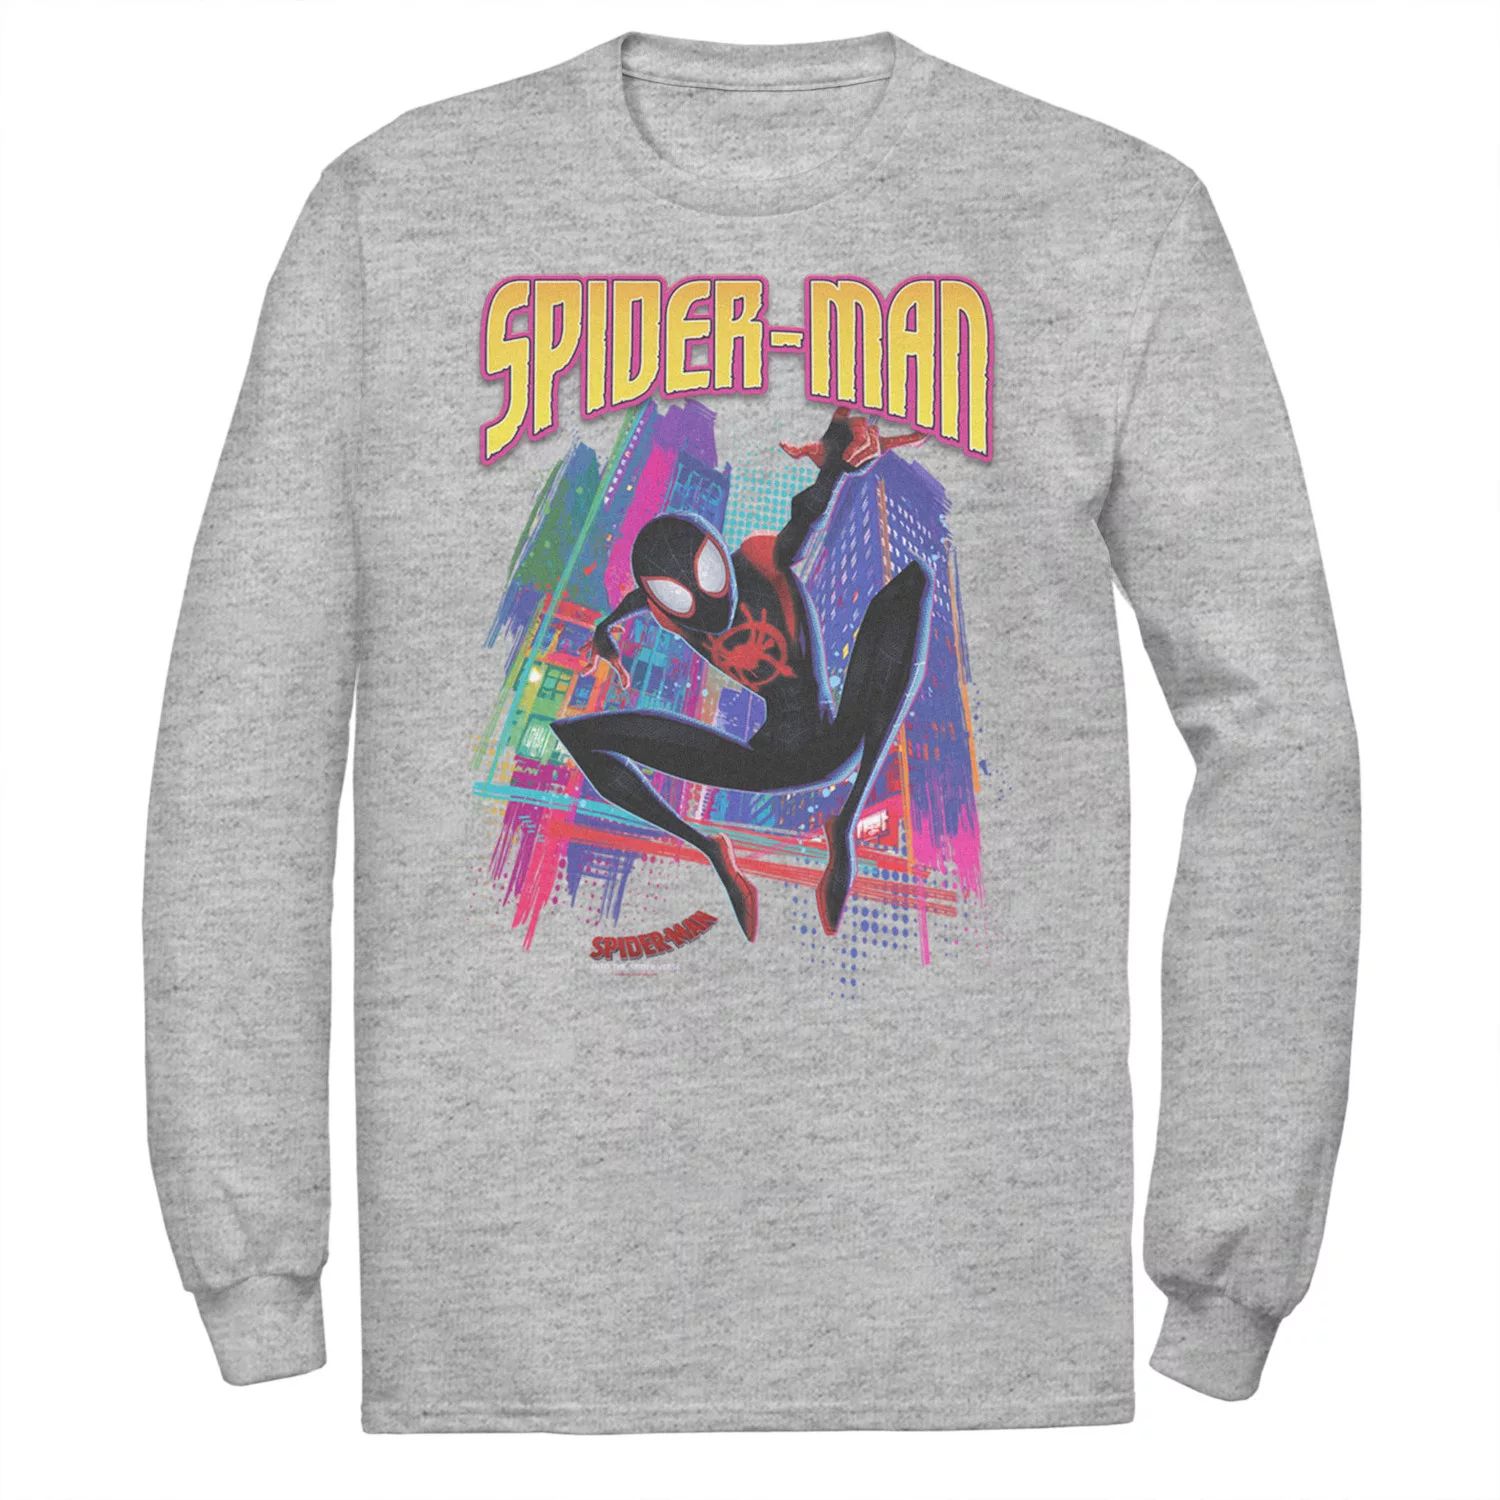 Мужская футболка Marvel Into The Spider-Verse Neon Skyline мужская майка marvel into the spider verse